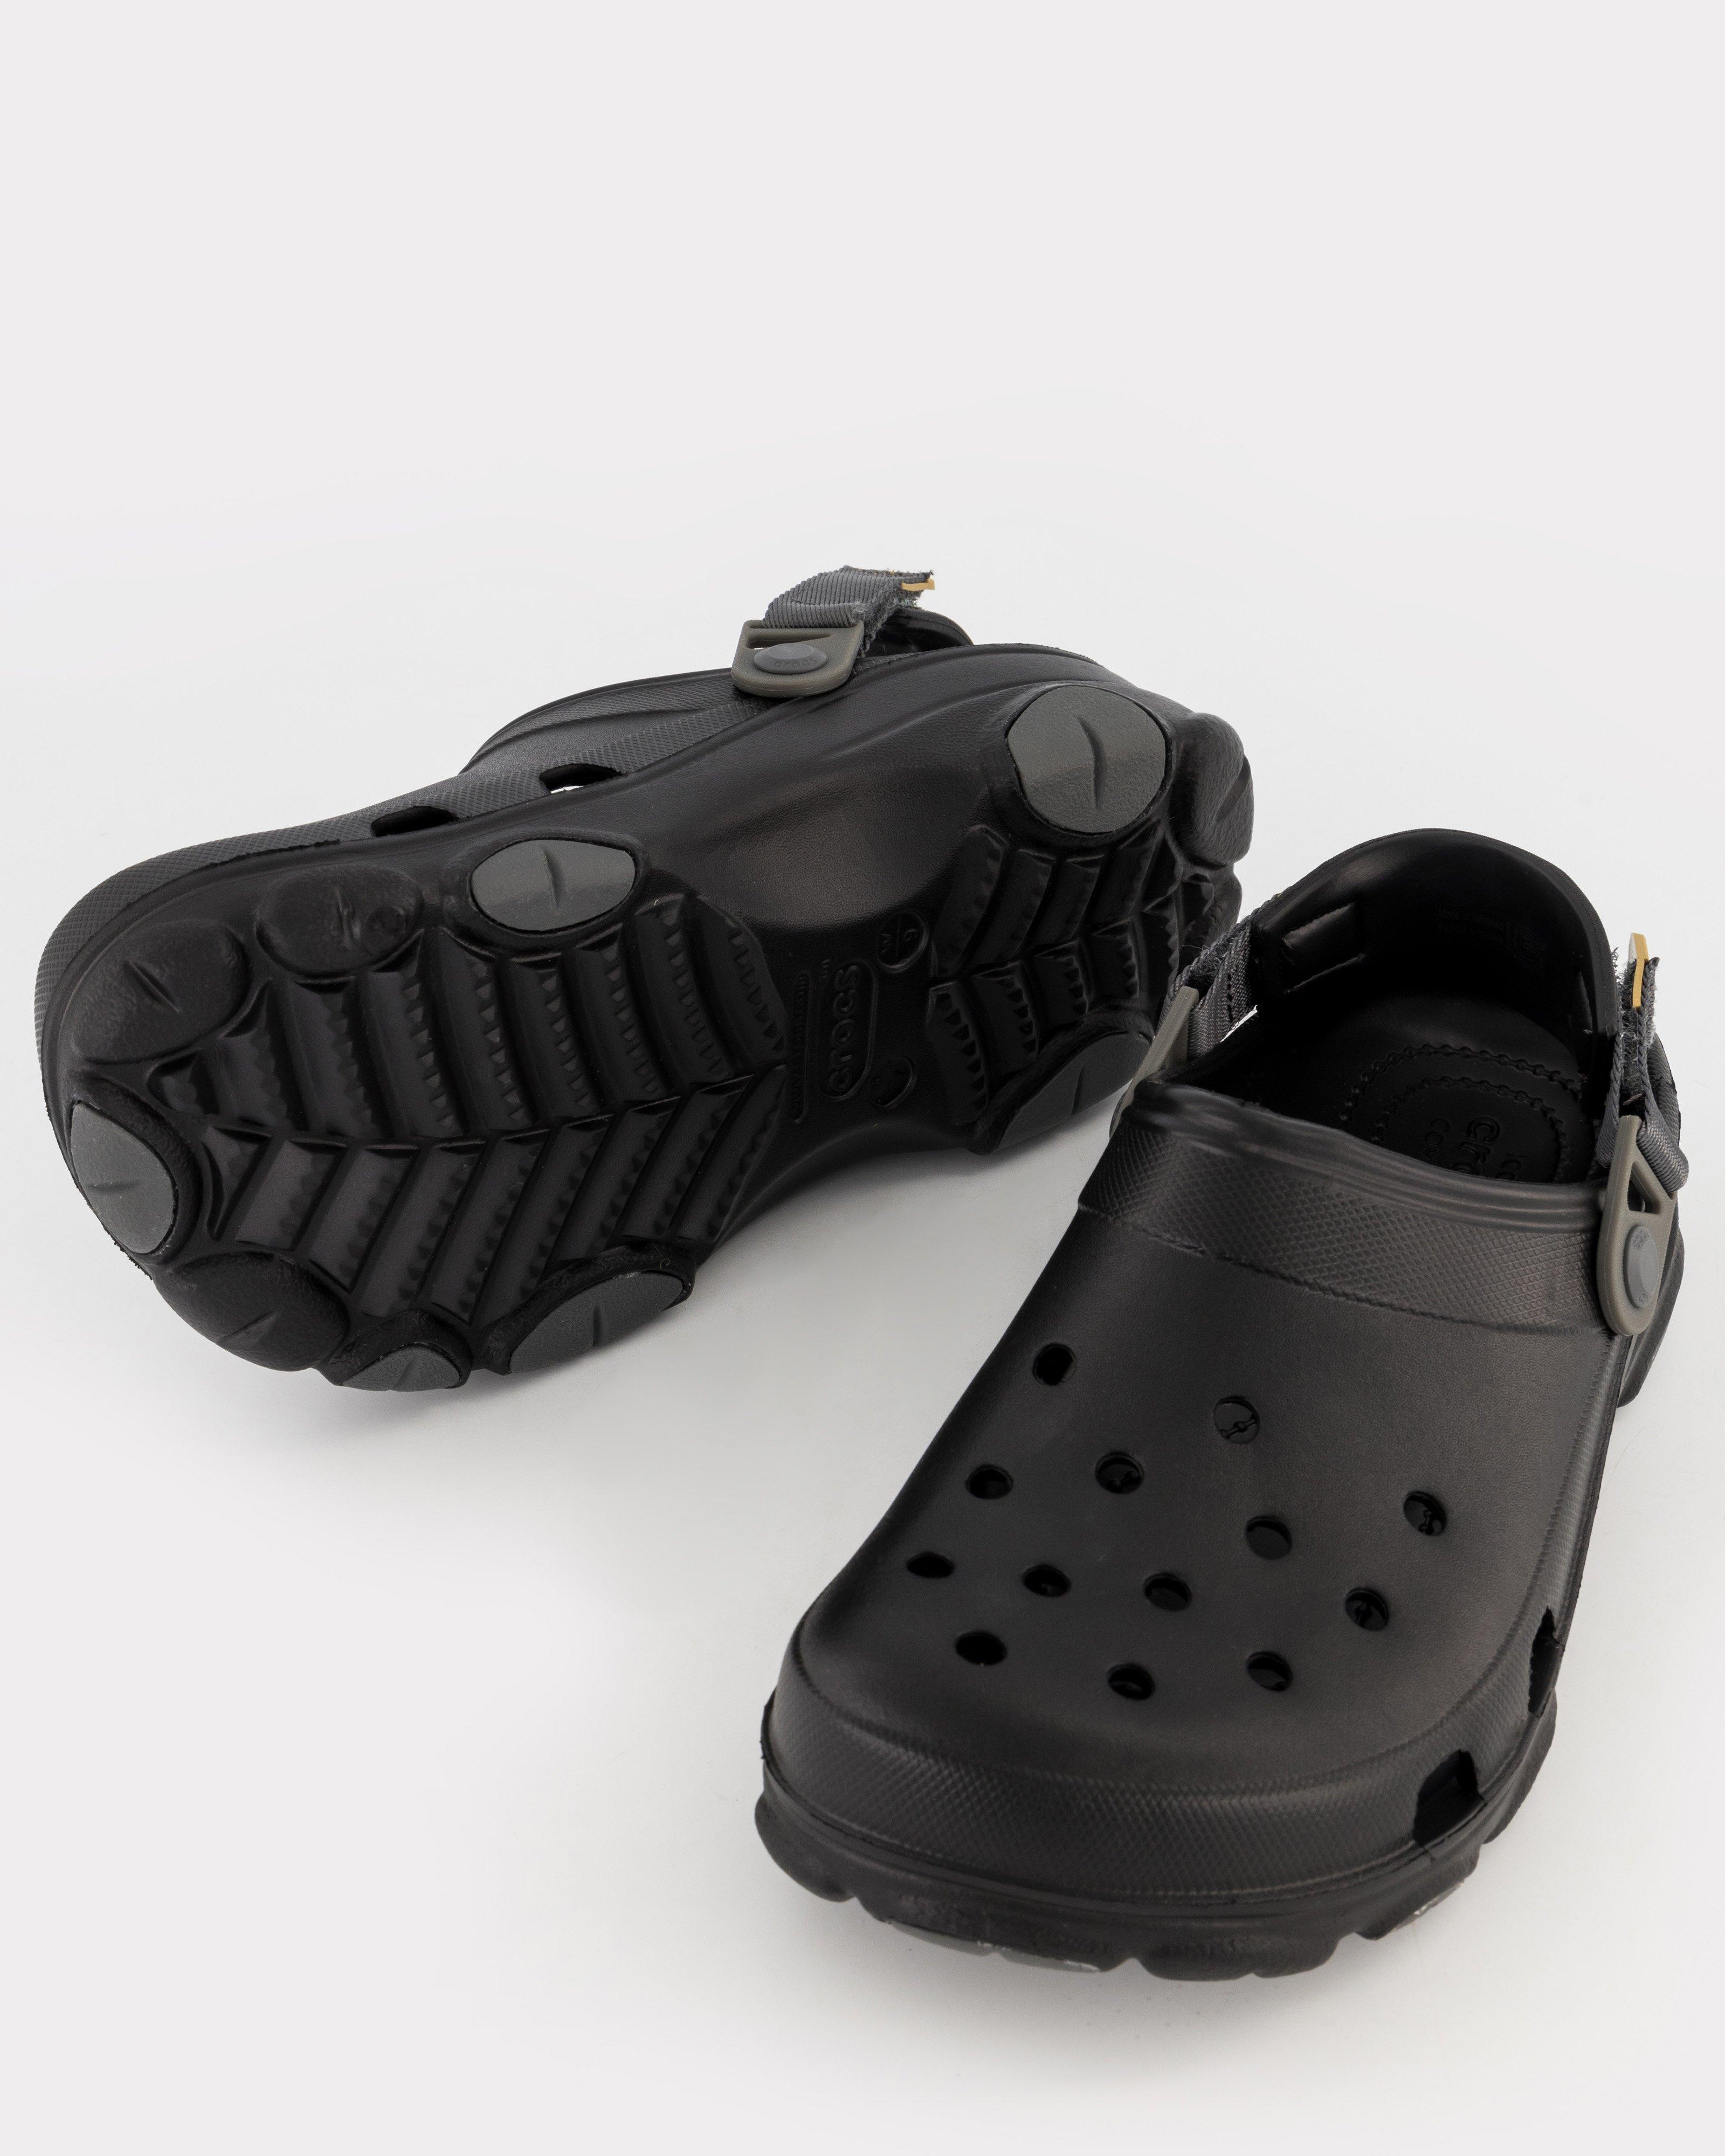 Men's Crocs Classic All-Terrain Clog -  Black